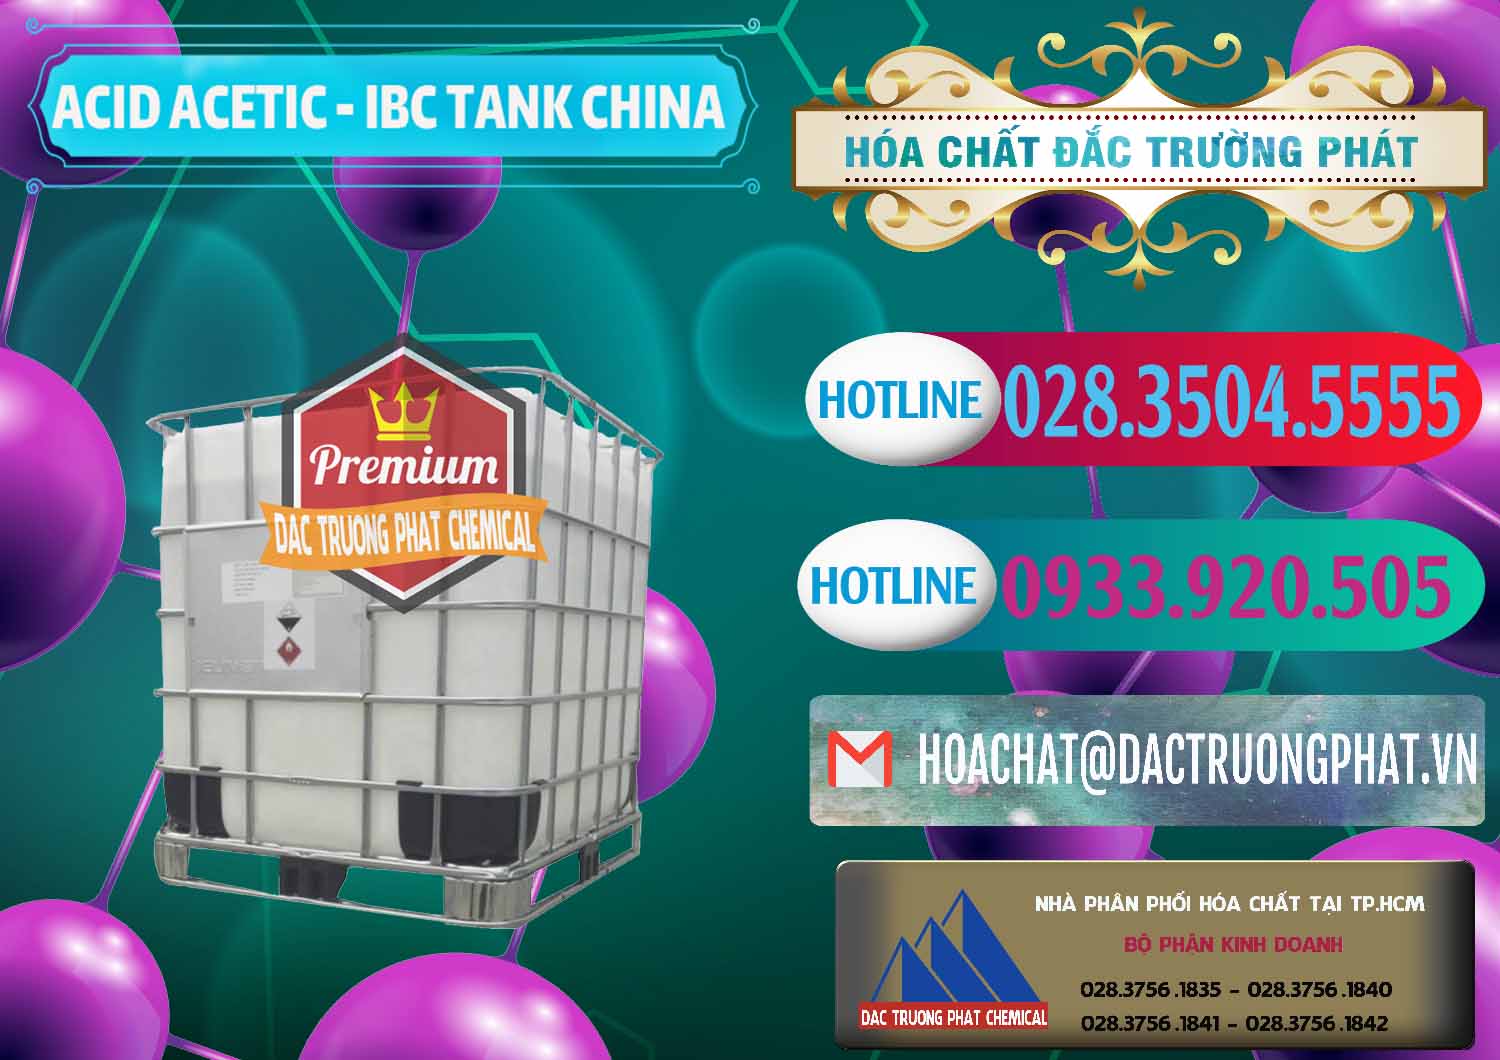 Nơi chuyên bán và phân phối Acetic Acid – Axit Acetic Tank Bồn IBC Trung Quốc China - 0443 - Cty chuyên phân phối & bán hóa chất tại TP.HCM - truongphat.vn